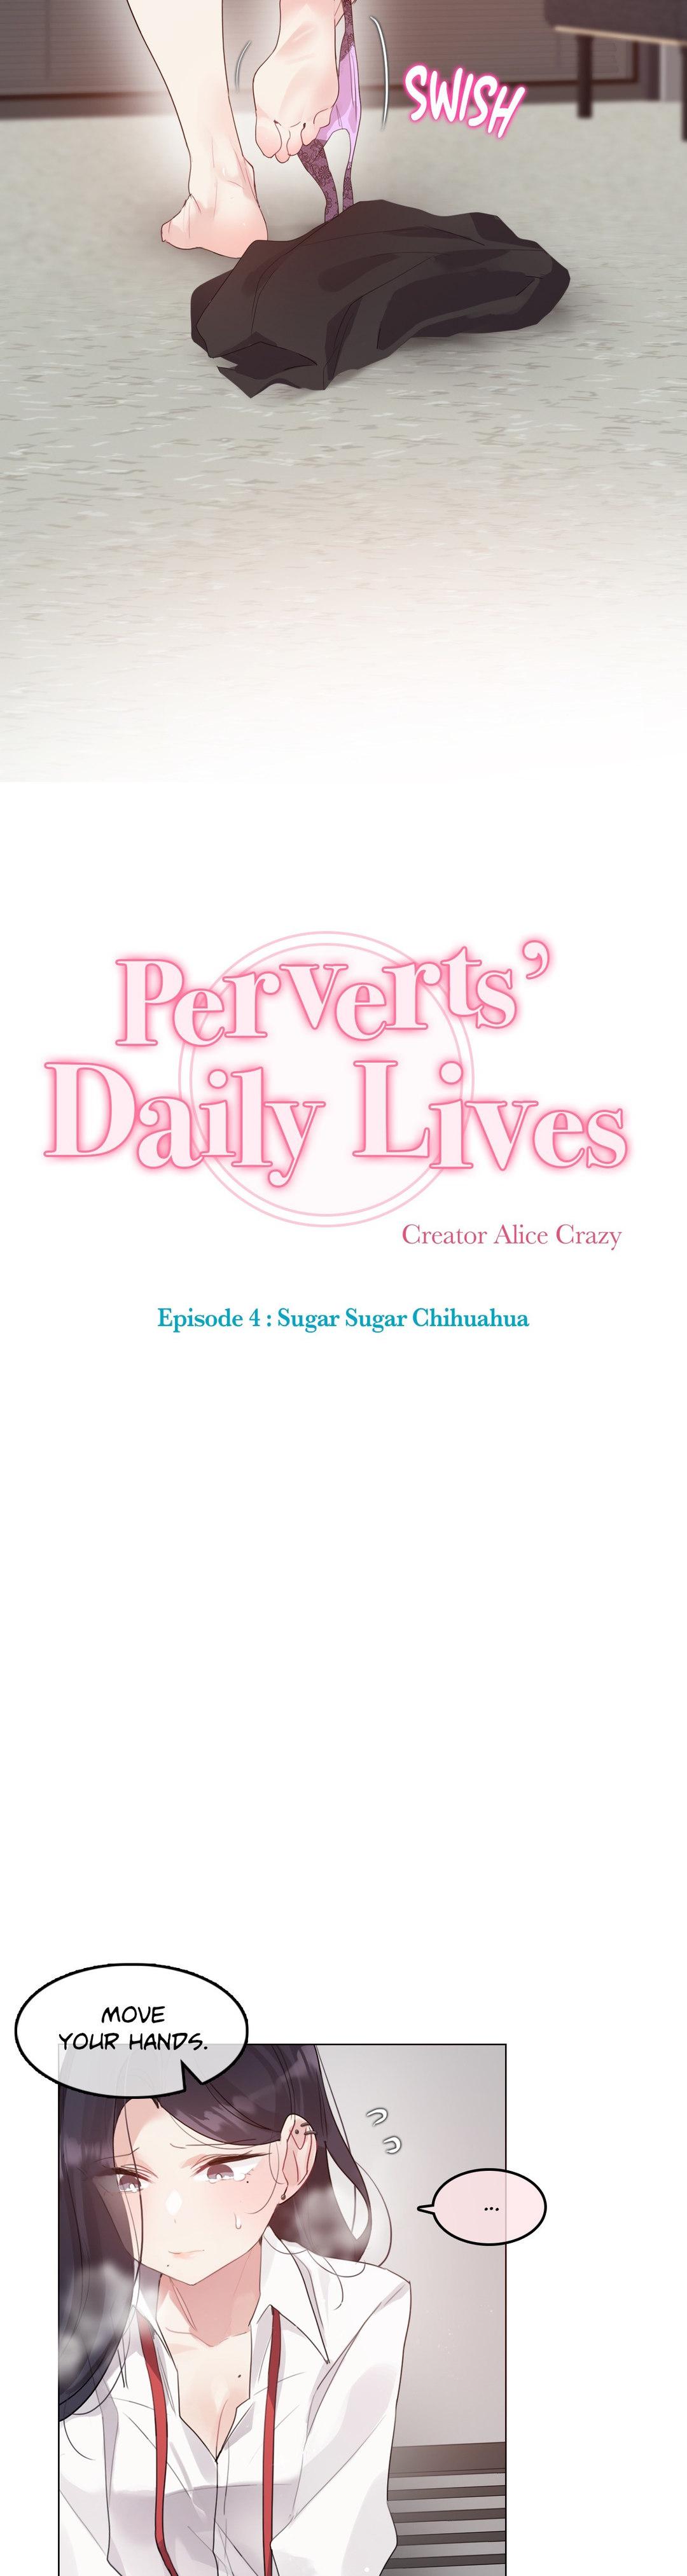 Perverts' Daily Lives Episode 4: Sugar Sugar Chihuahua 61